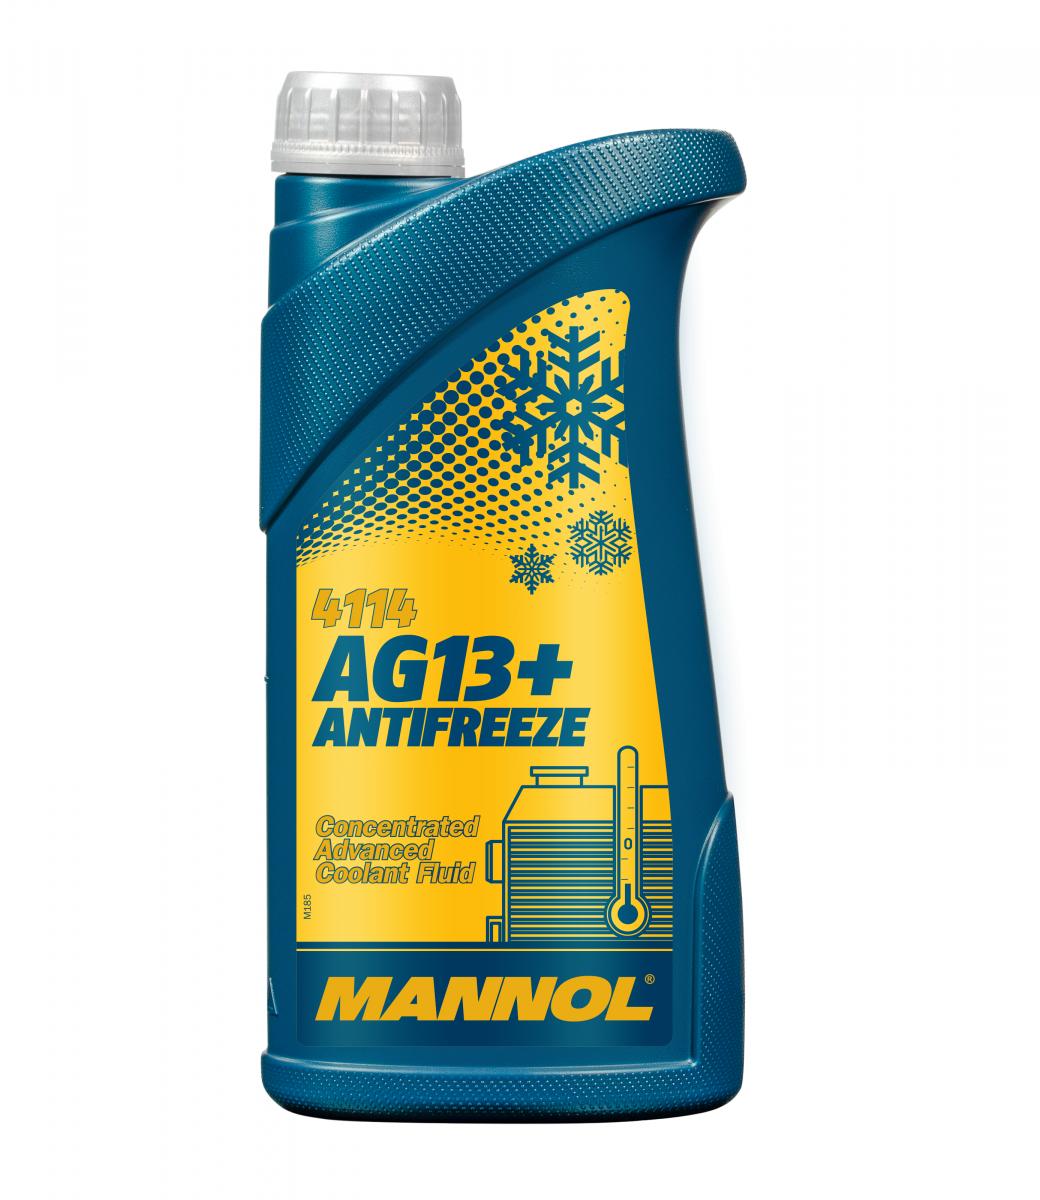 3 Liter (3x1) MANNOL AG13+ Kühlflüssigkeit Advanced Antifreeze Konzentrat gelb G13+